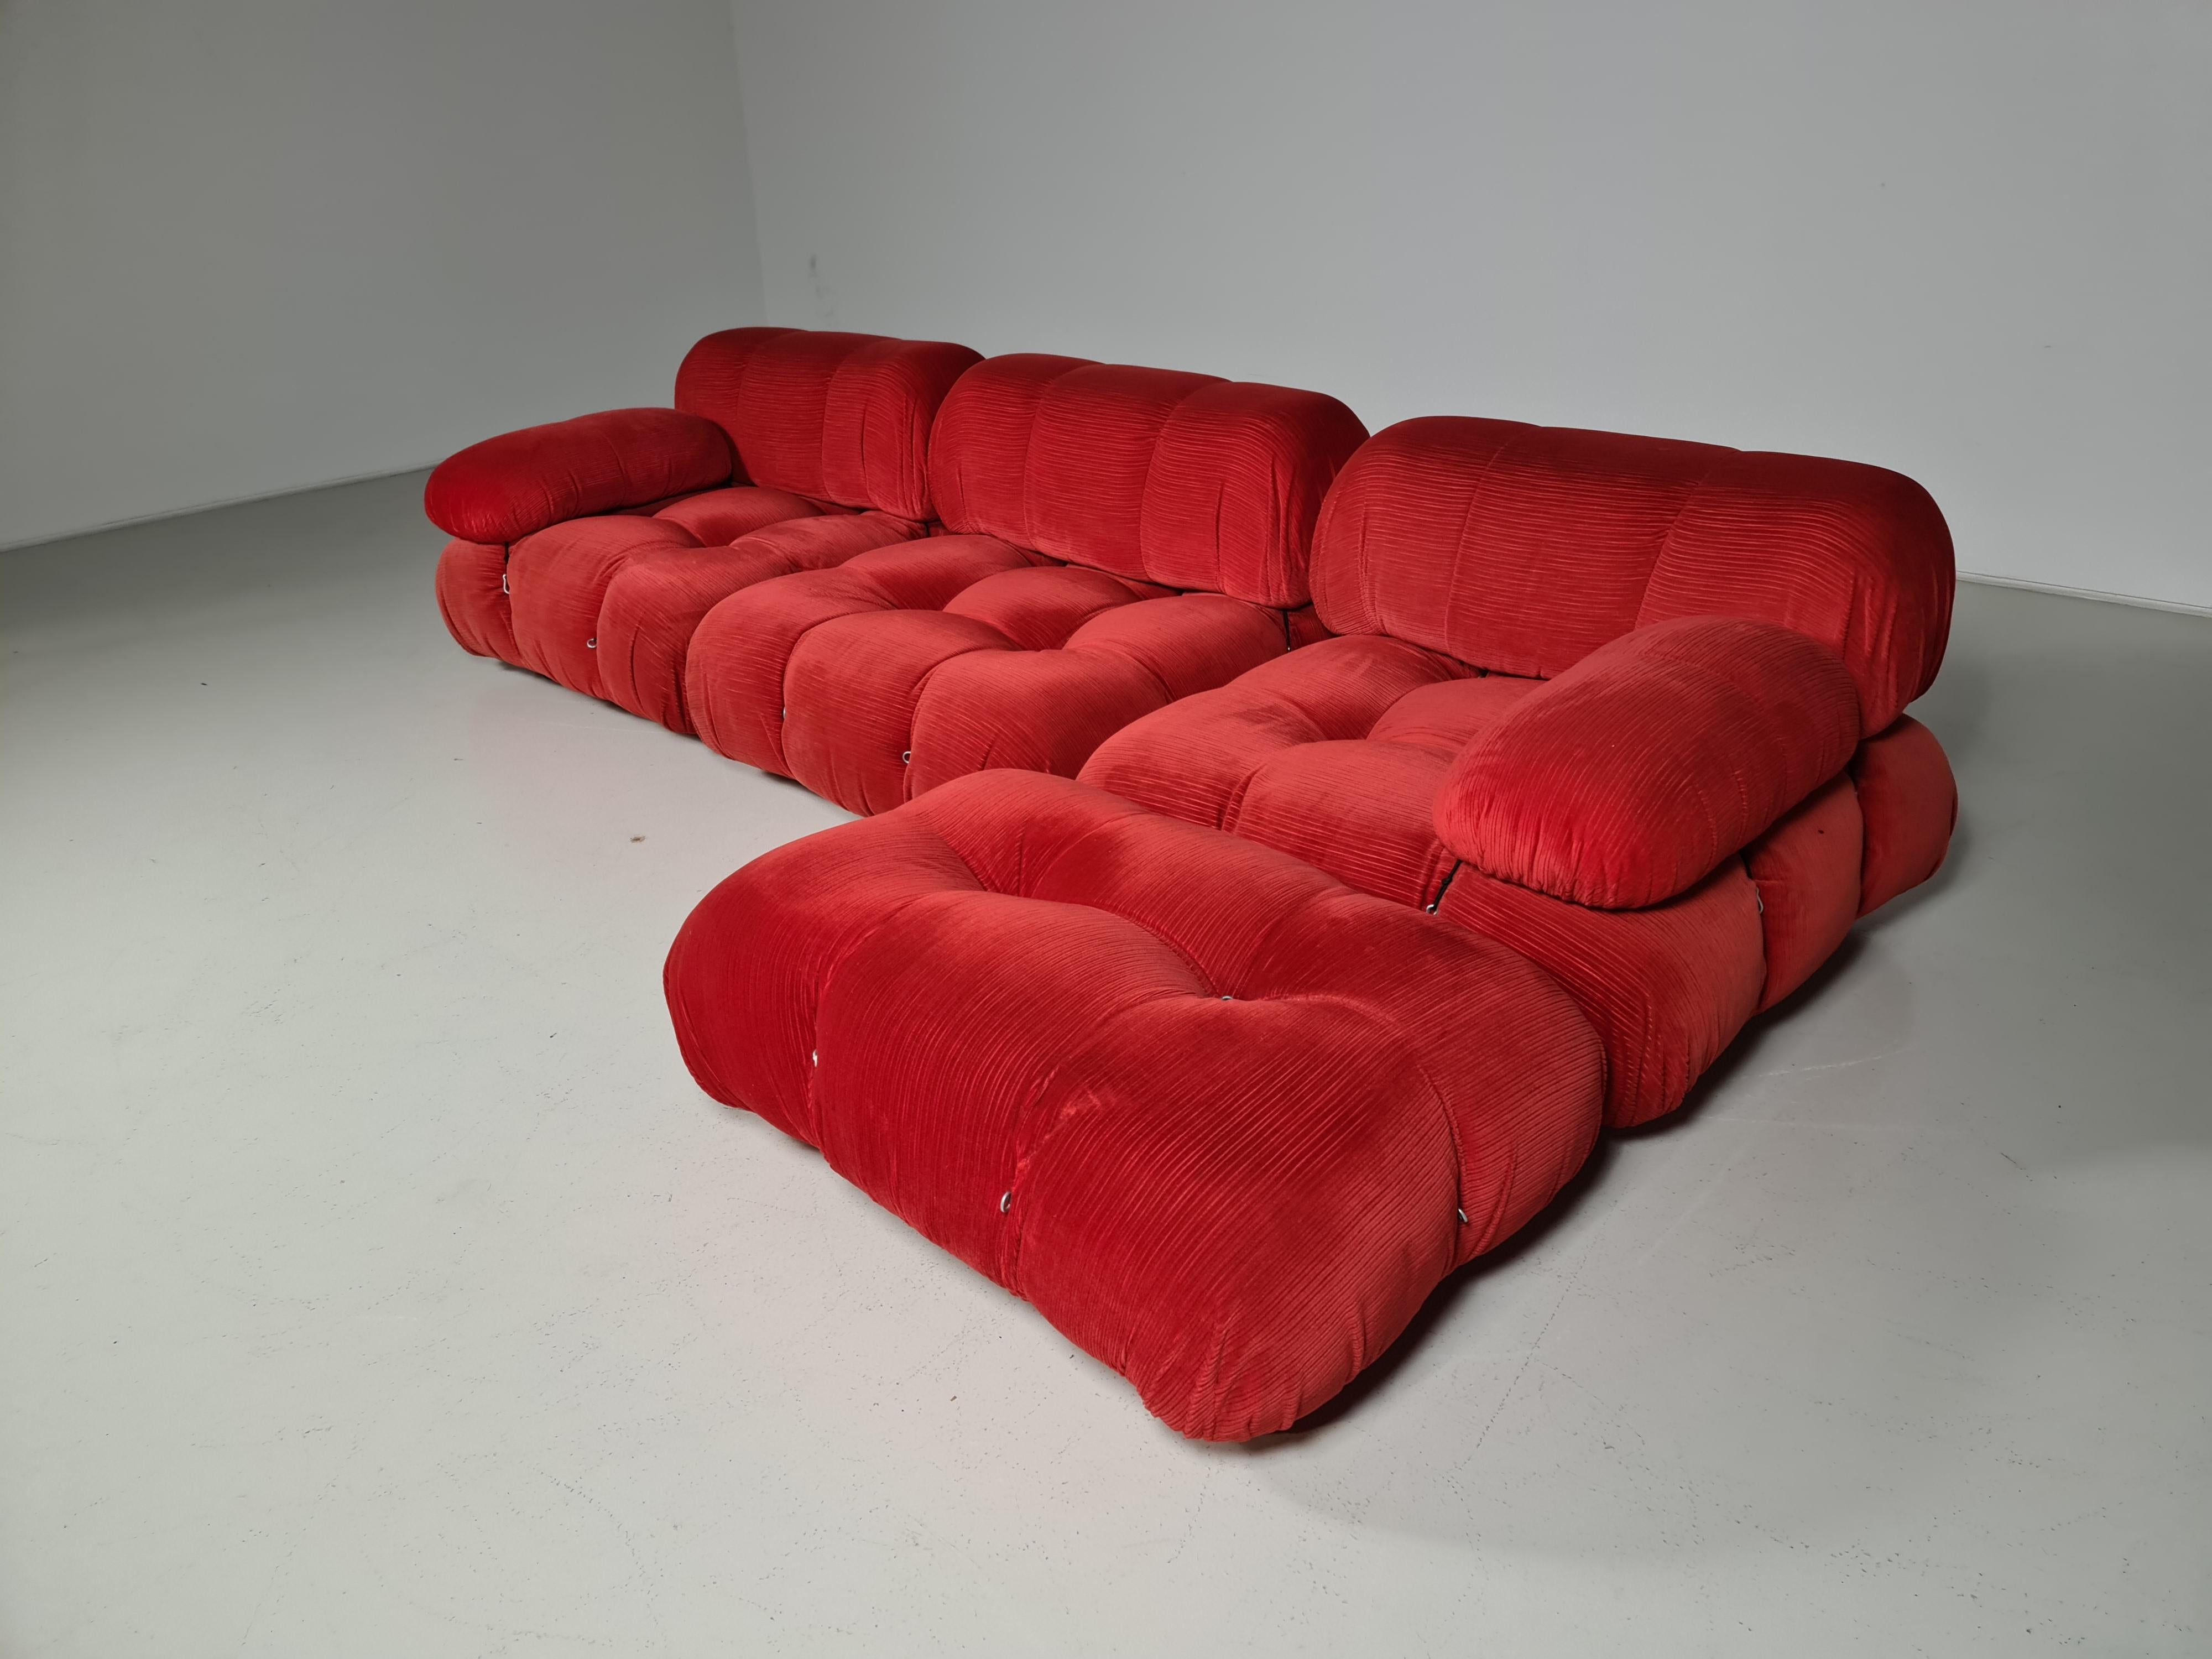 European Camaleonda Sofa in Original Fabric by Mario Bellini for B&B Italia, 1970s